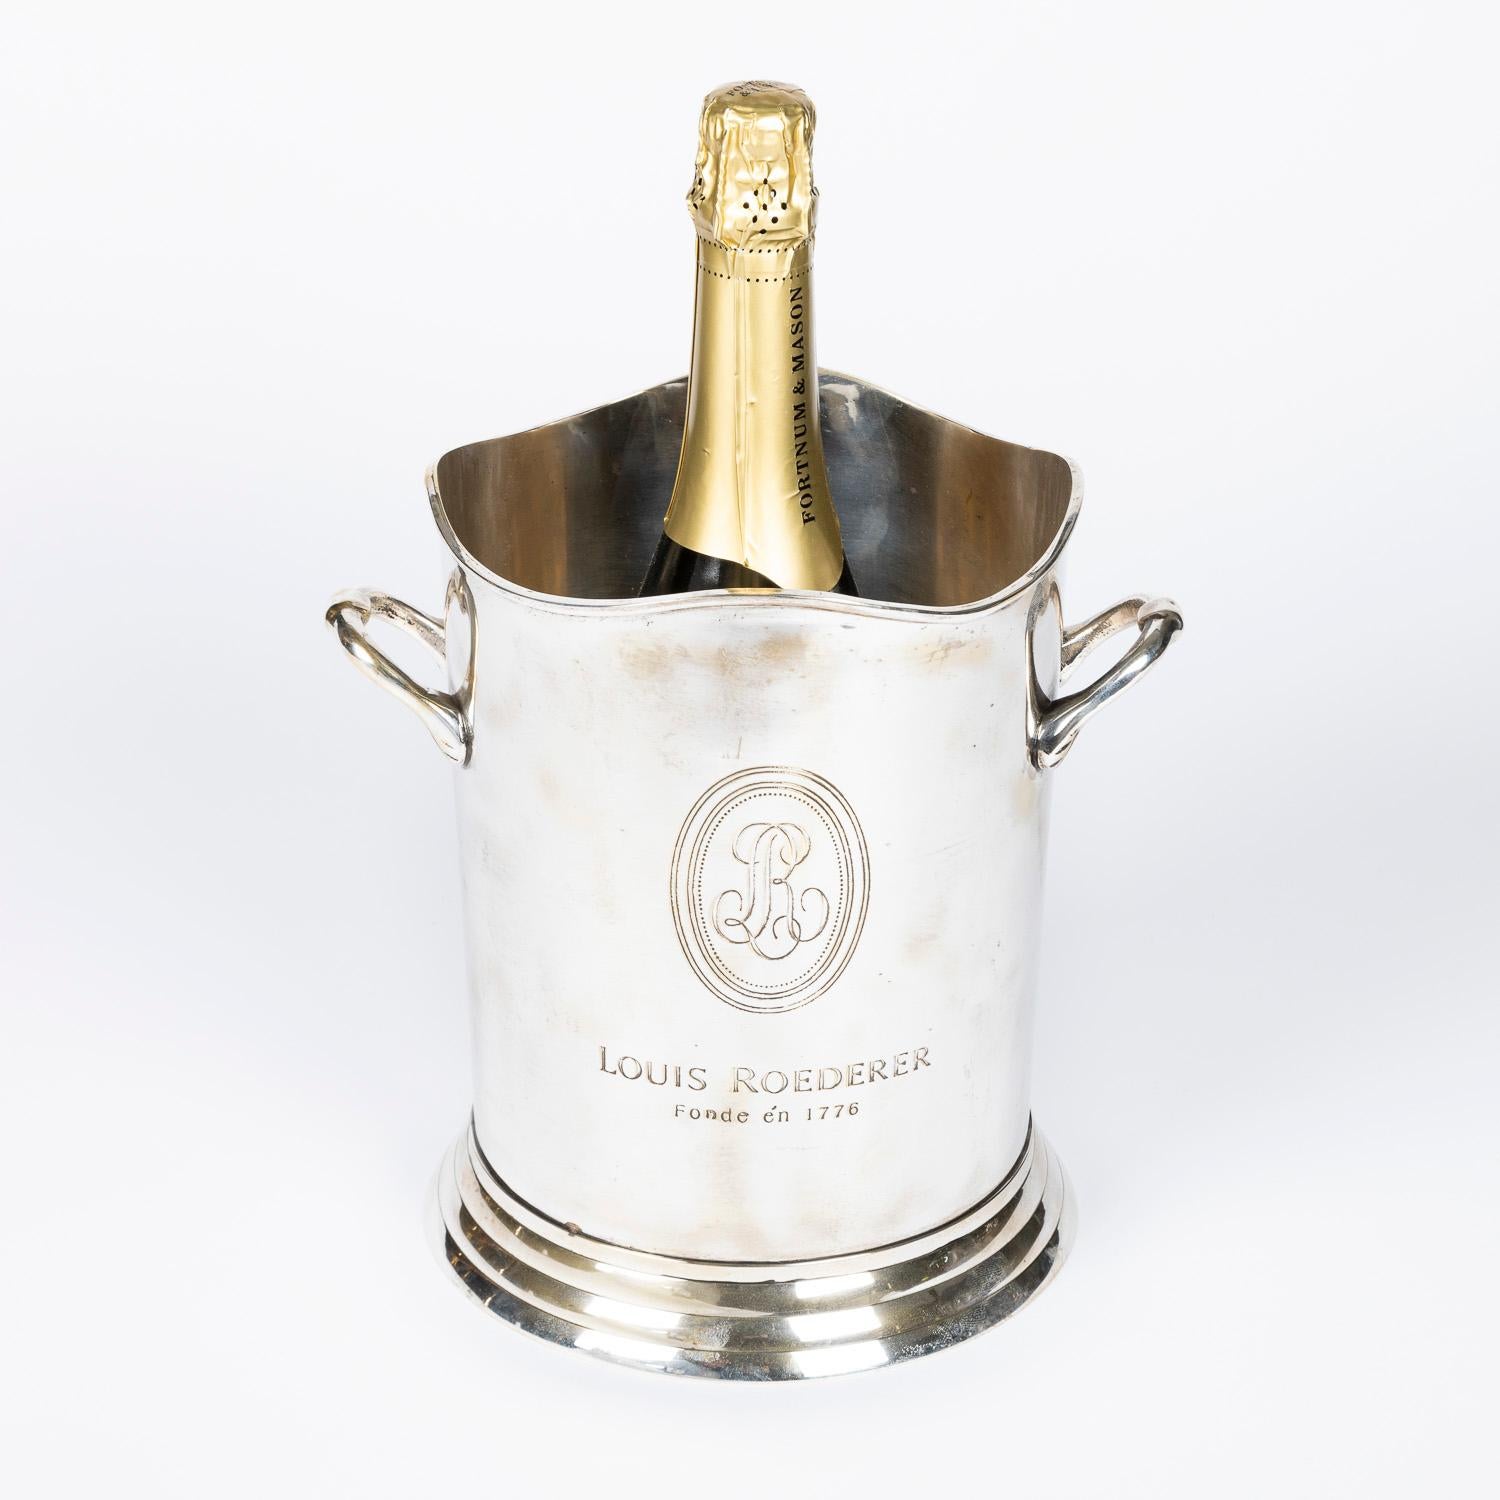 Versilberter Champagner-Eiskübel für Louis Roederer von James Deakin & Sons (Versilberung)